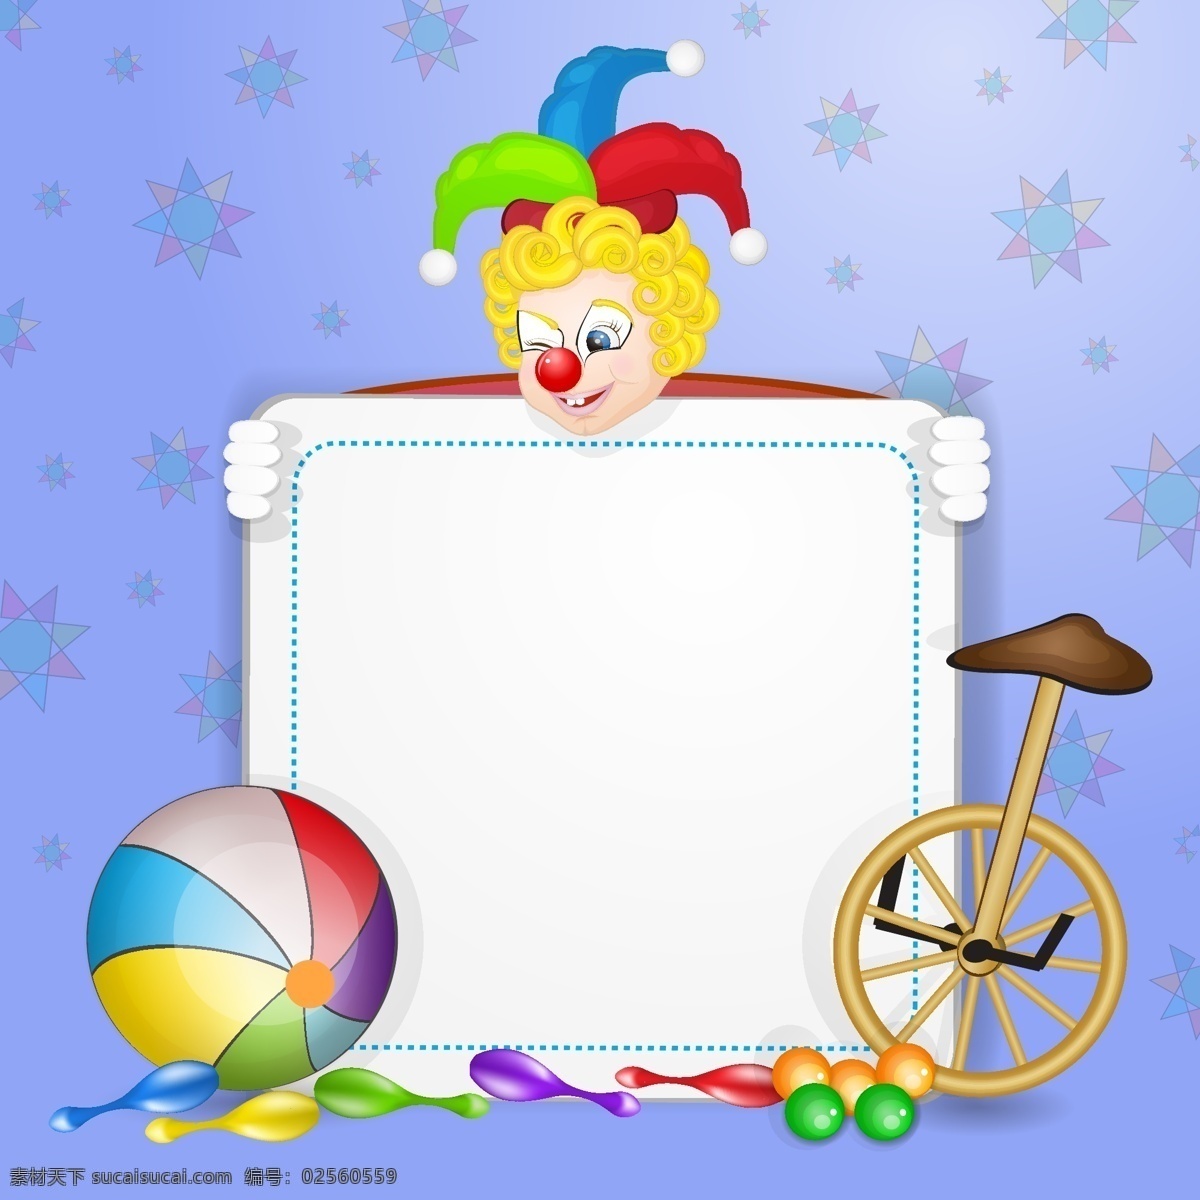 马戏团 小丑 矢量 彩色 球 矢量素材 设计素材